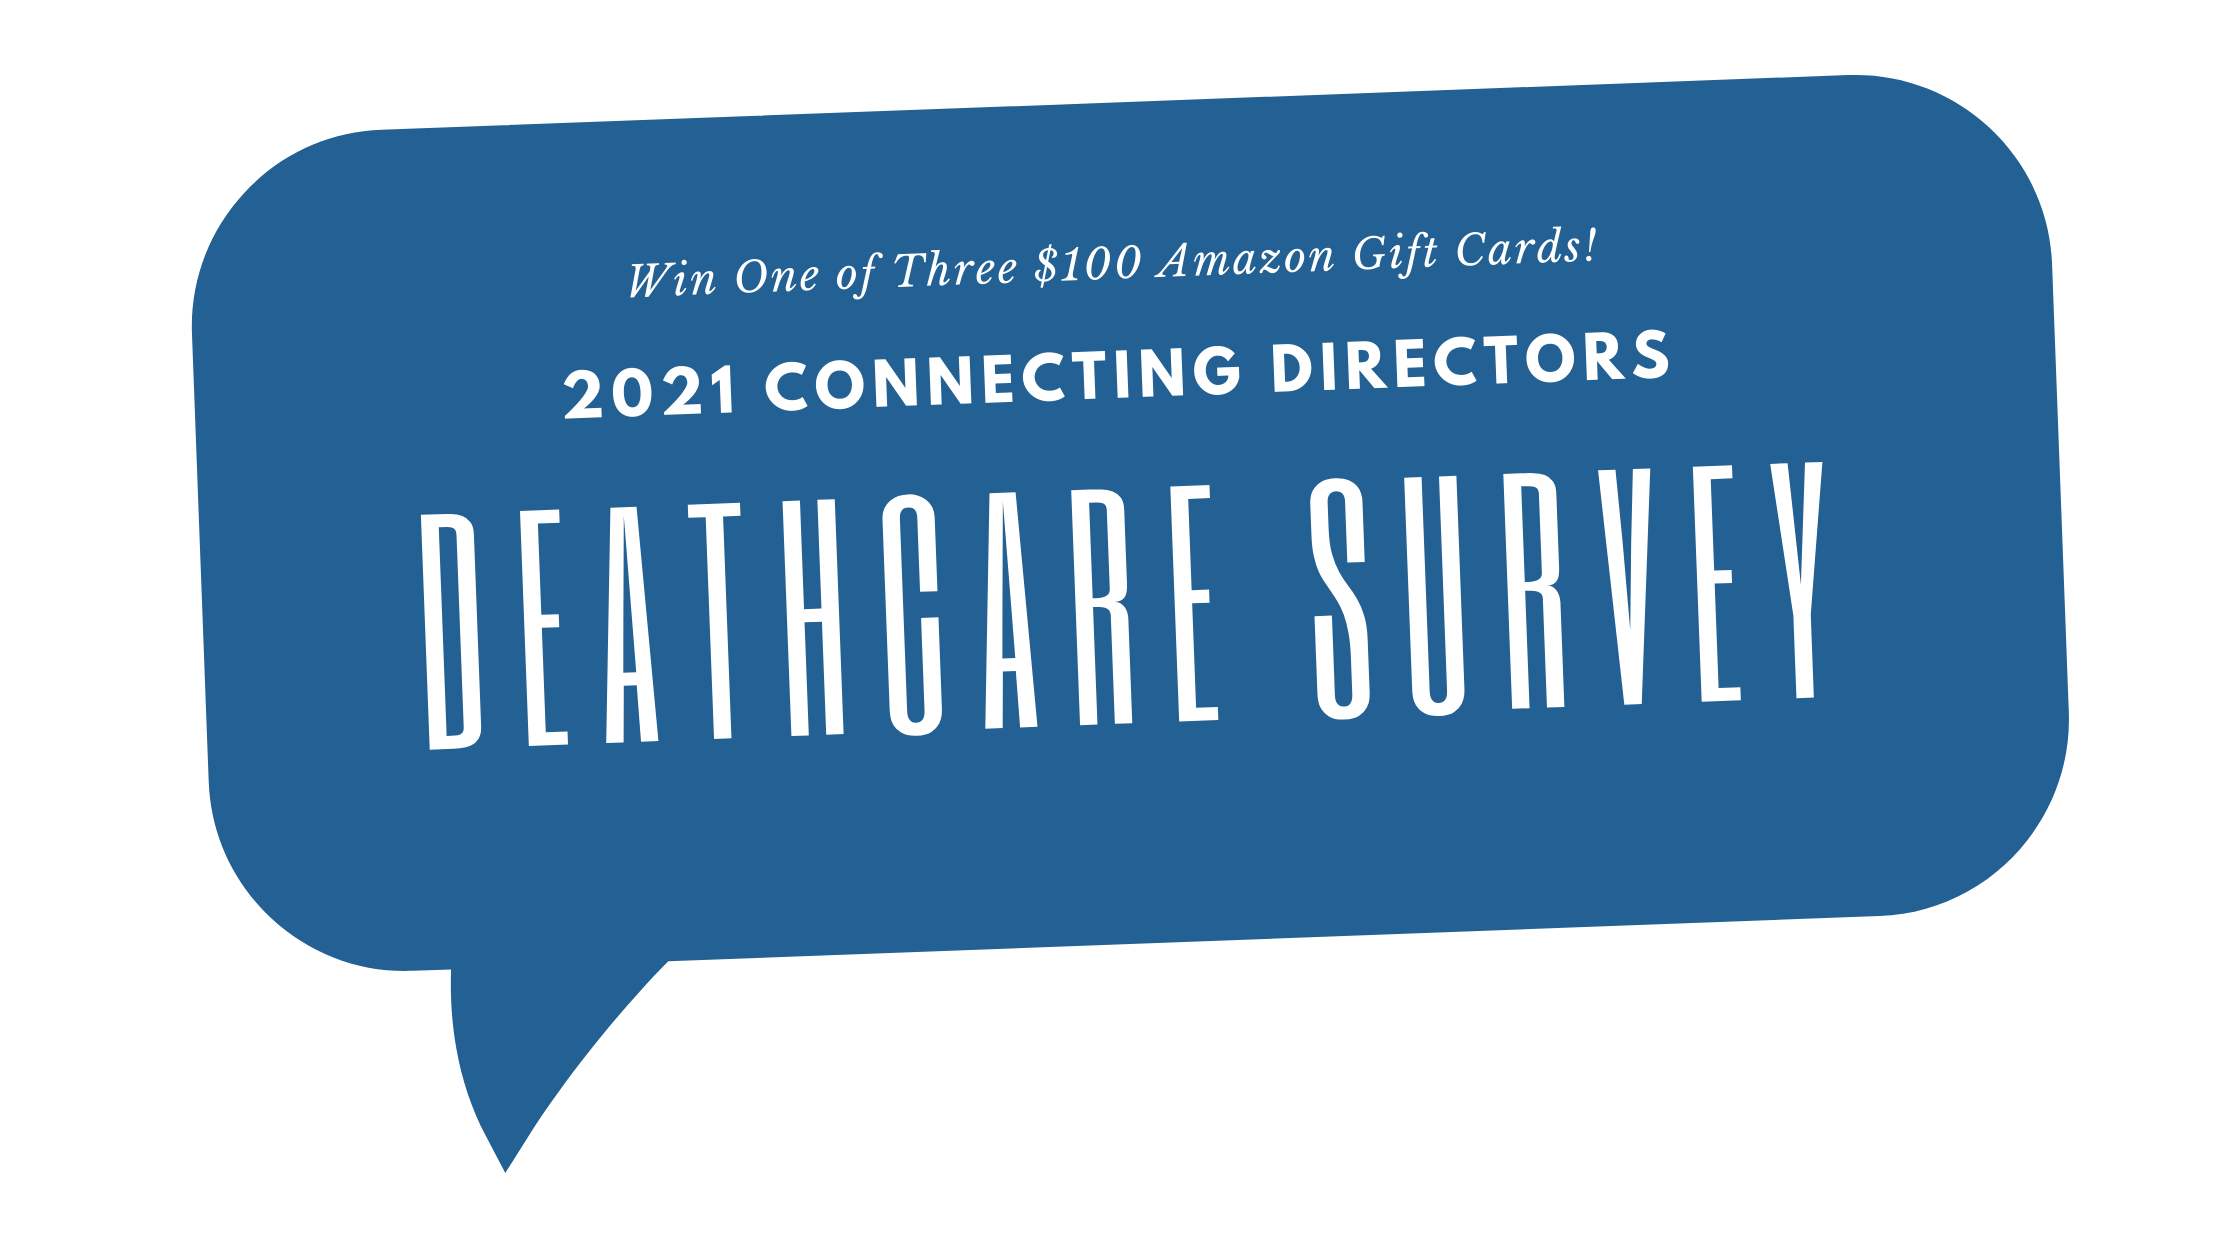 Deathcare survey graphic